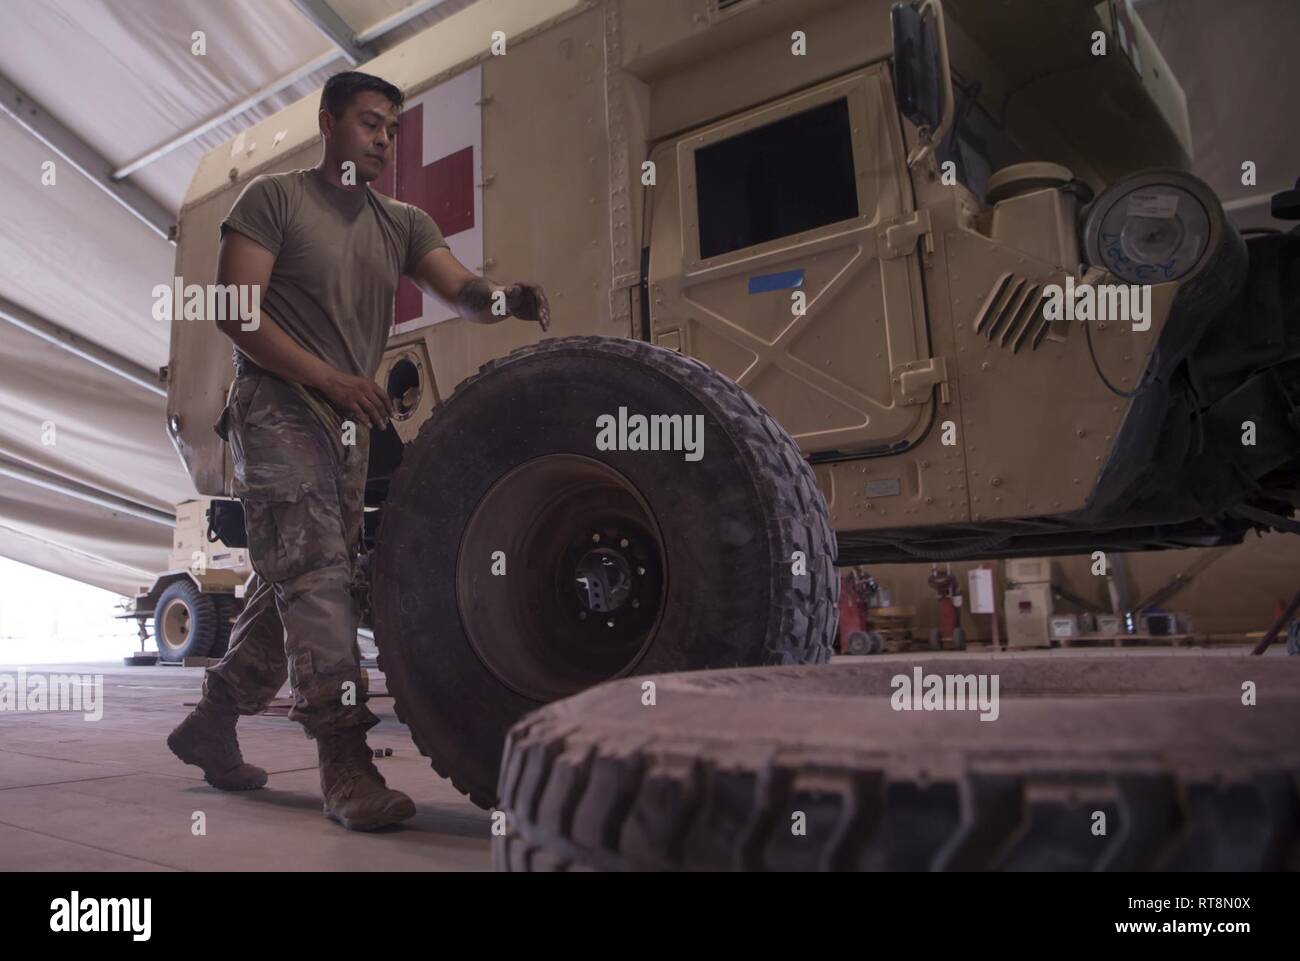 Noi meccanici dell'esercito immagini e fotografie stock ad alta risoluzione  - Pagina 13 - Alamy